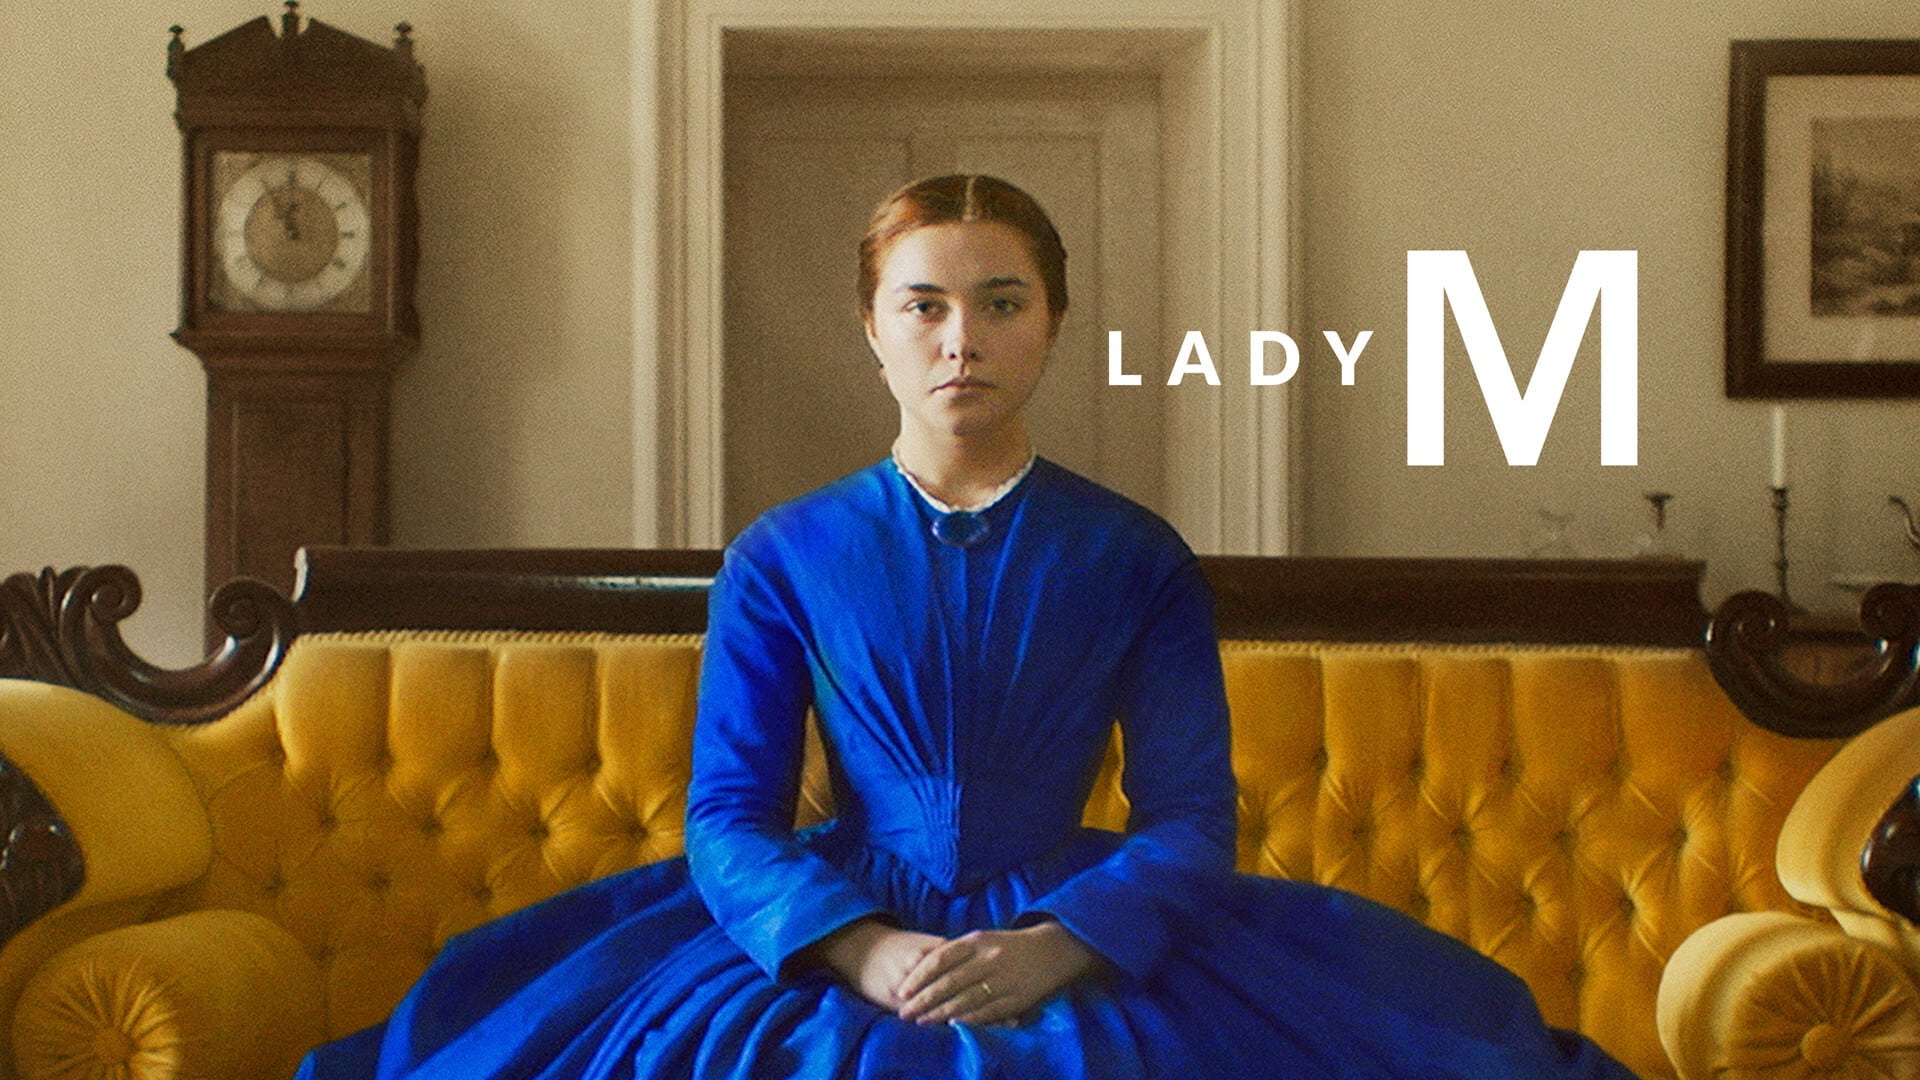 Lady Macbeth (2016)